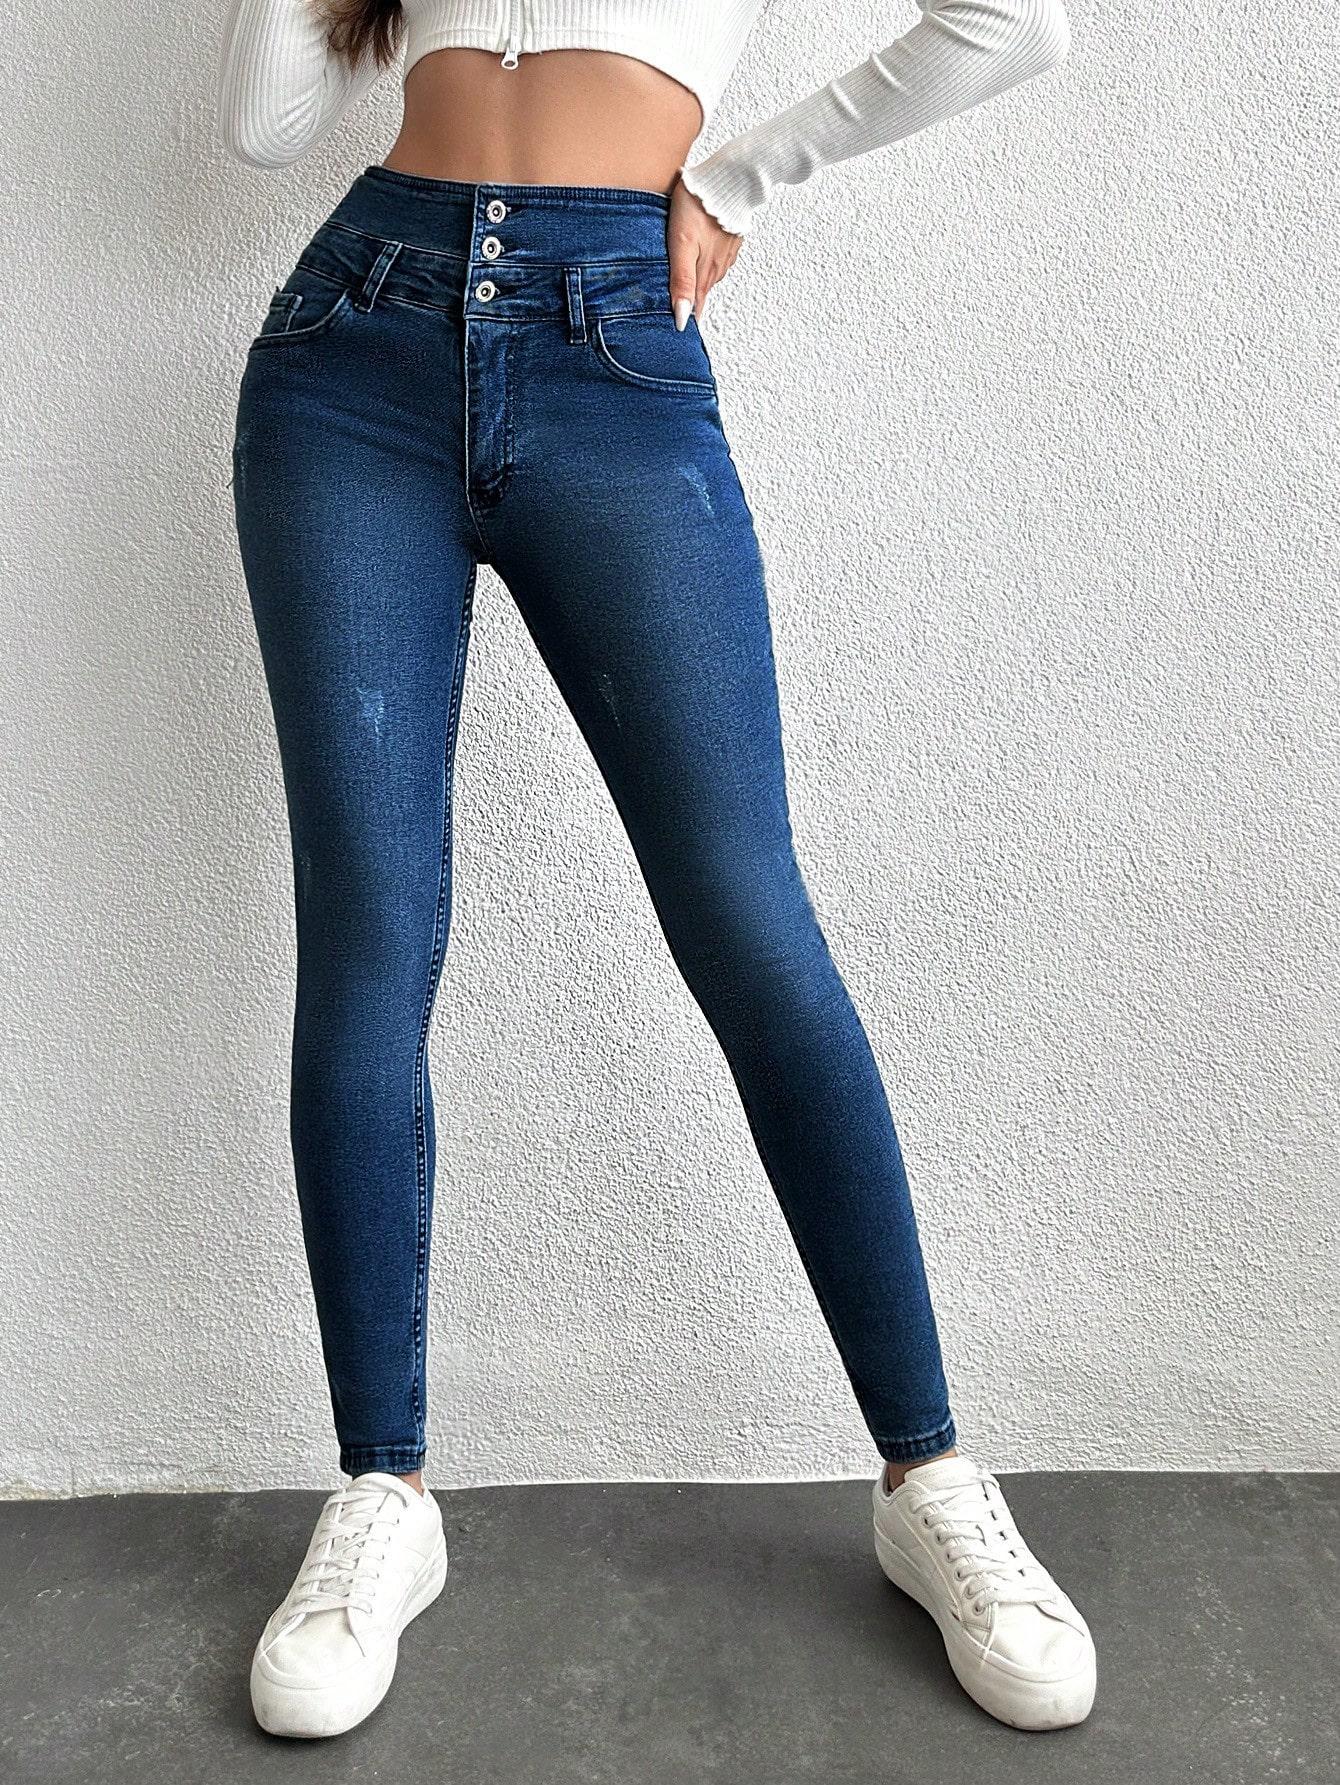 spodnie jeans rurki wysoki stan guziki